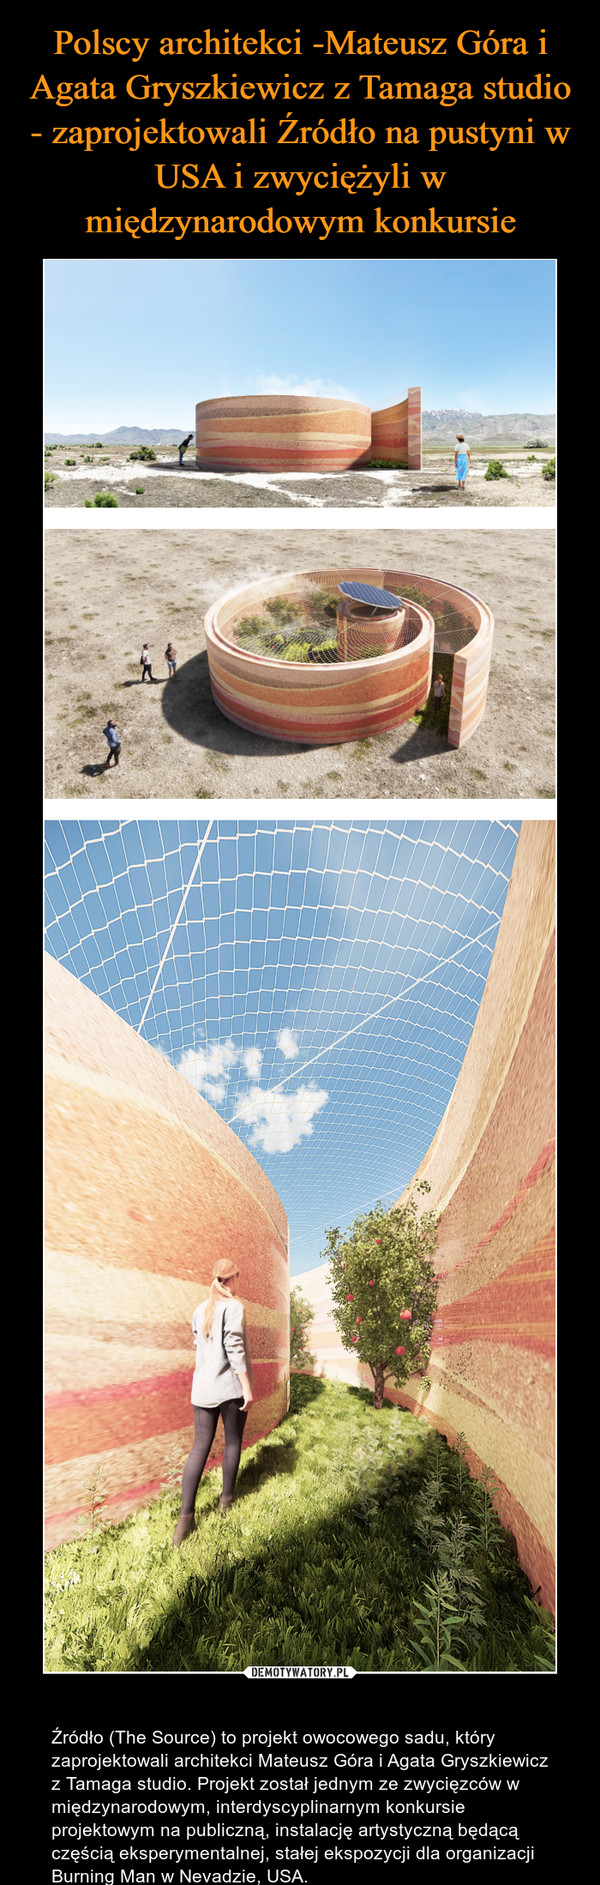  – Źródło (The Source) to projekt owocowego sadu, który zaprojektowali architekci Mateusz Góra i Agata Gryszkiewicz z Tamaga studio. Projekt został jednym ze zwycięzców w międzynarodowym, interdyscyplinarnym konkursie projektowym na publiczną, instalację artystyczną będącą częścią eksperymentalnej, stałej ekspozycji dla organizacji Burning Man w Nevadzie, USA. 